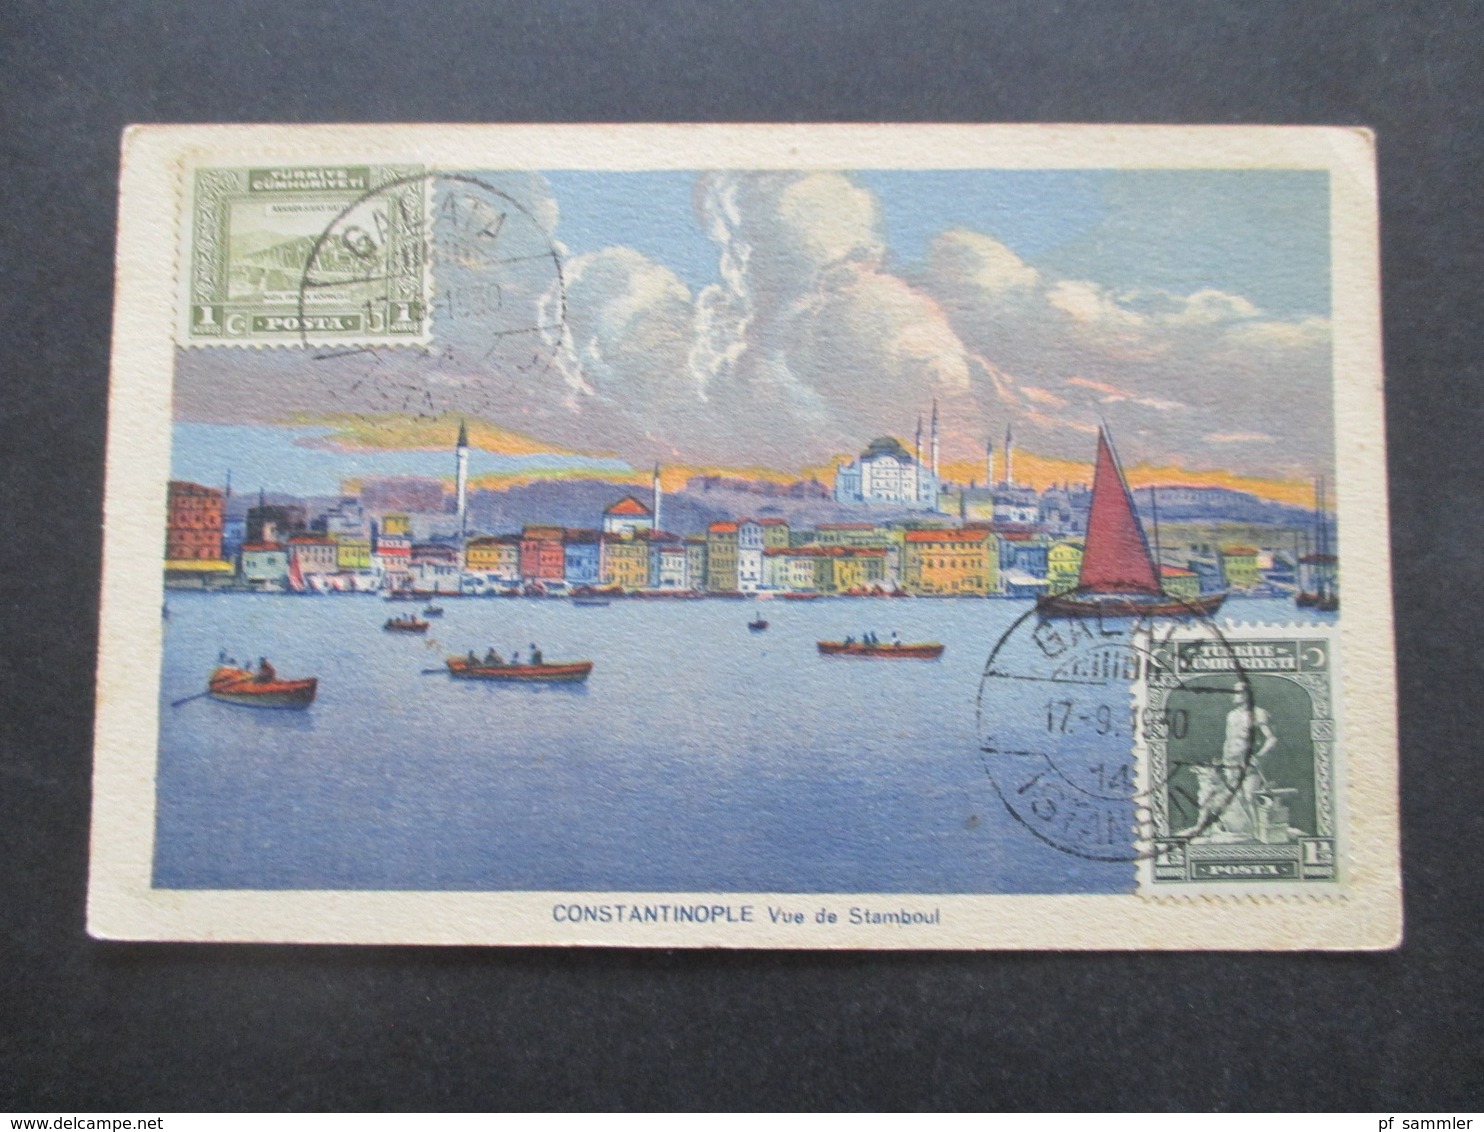 Türkei 1930 Bildseitig Frankierte AK Constantinople Vue De Stamboul Stempel Galata Nach Jugoslawien Gesendet - Briefe U. Dokumente